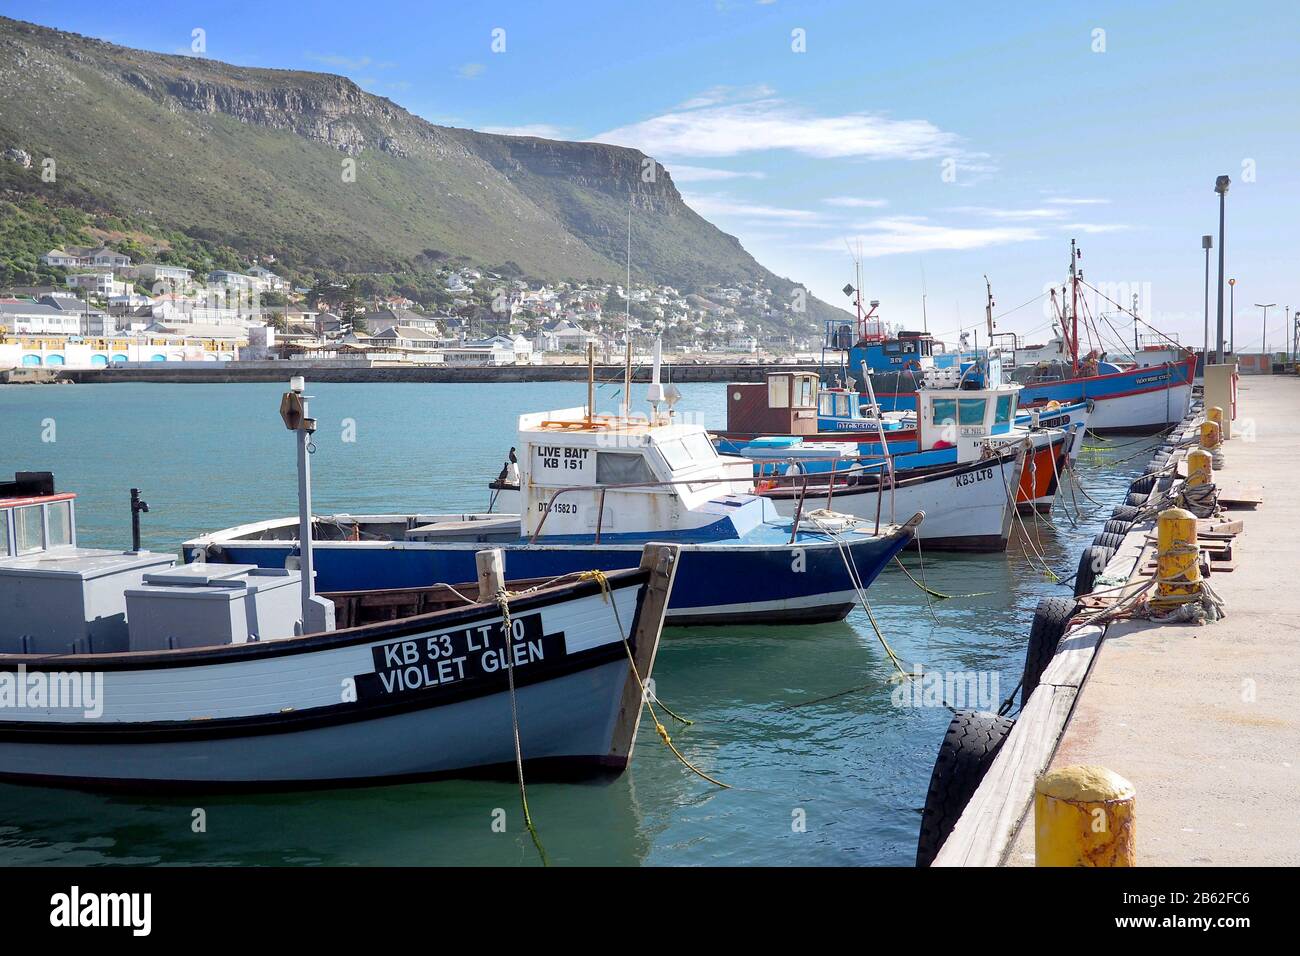 Kalk Bay Harbor, Città del Capo, Sudafrica - 16 maggio 2019 : le barche da pesca tradizionali in legno sono ormeggiate in un piccolo porto di Città del Capo, Sudafrica Foto Stock